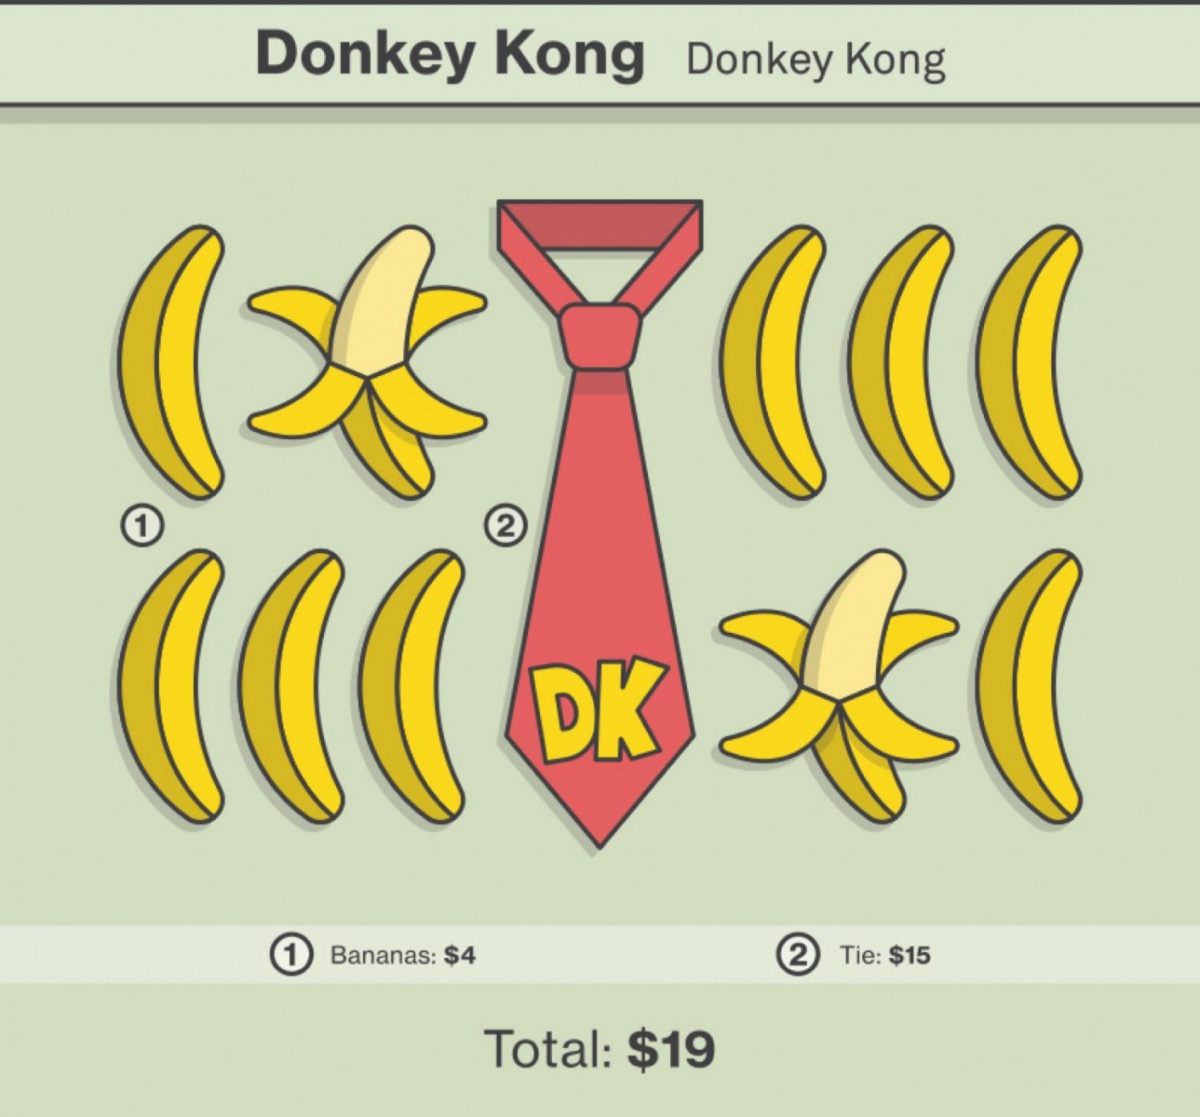 Donkey Kong—Donkey Kong